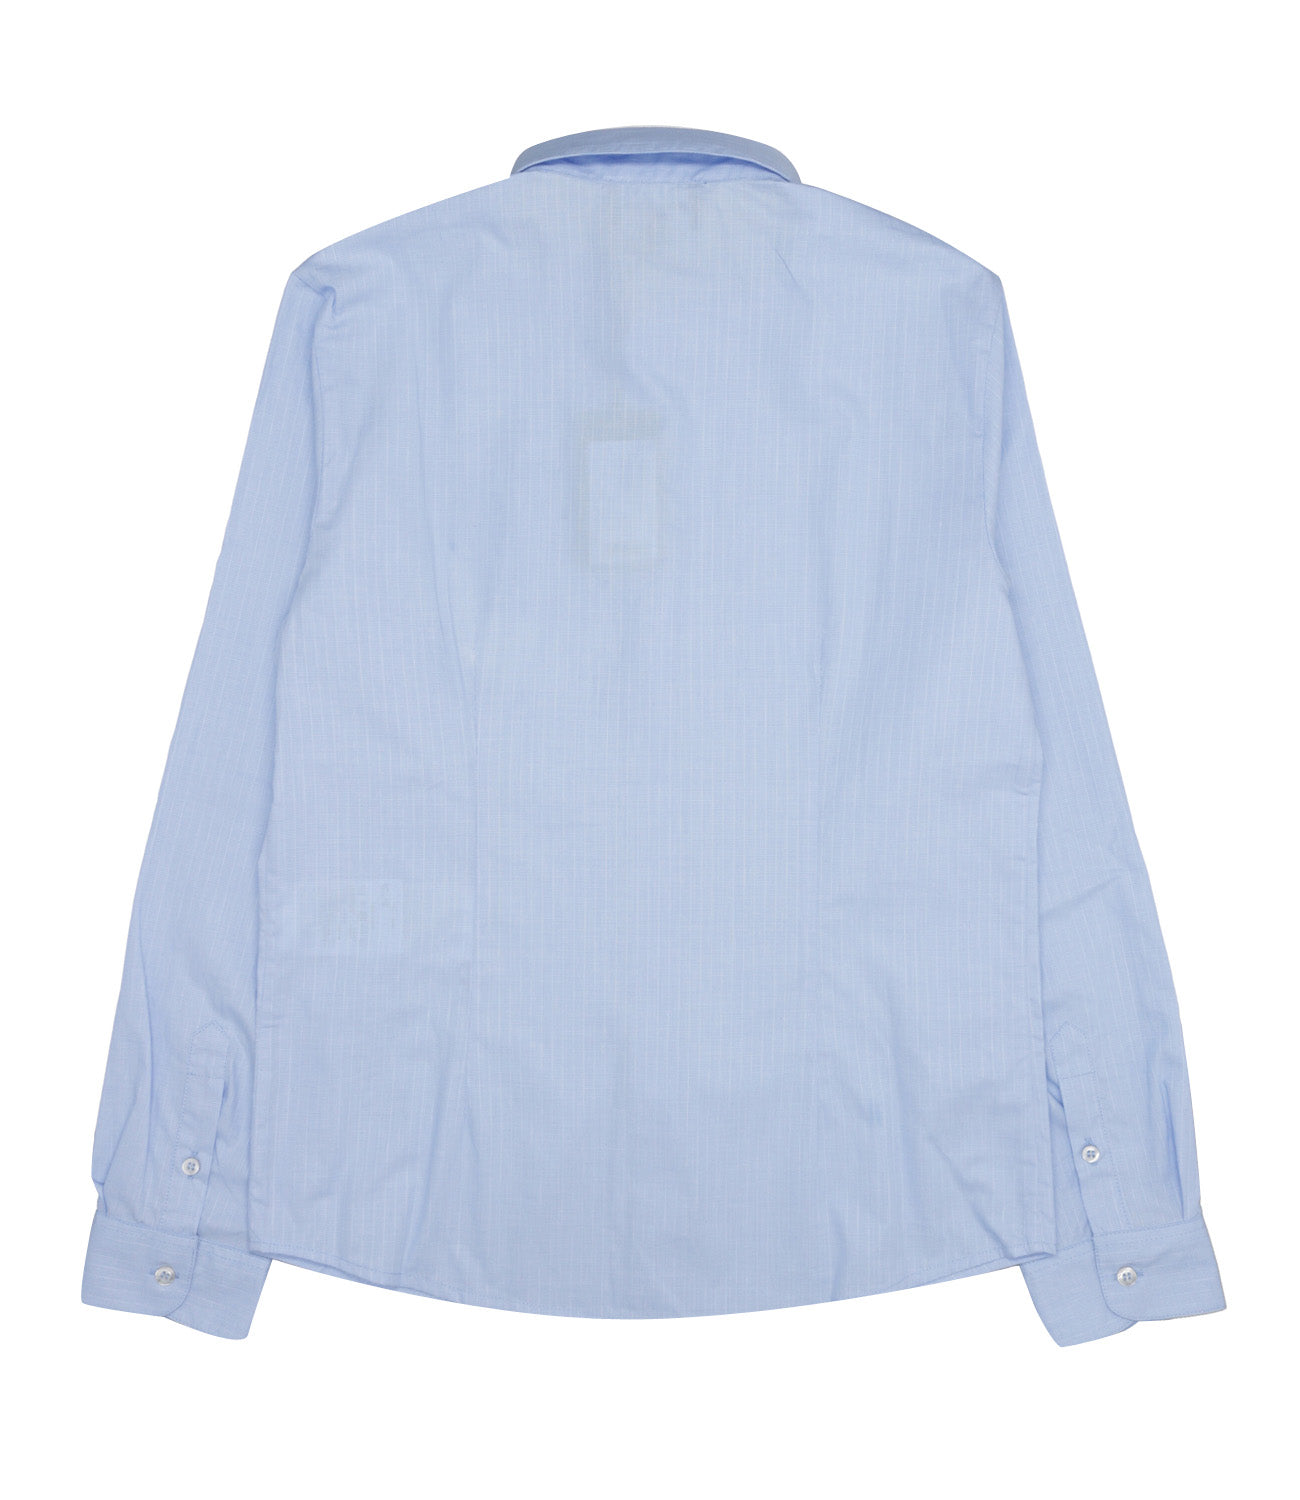 Emporio Armani Junior | Light Blue Shirt